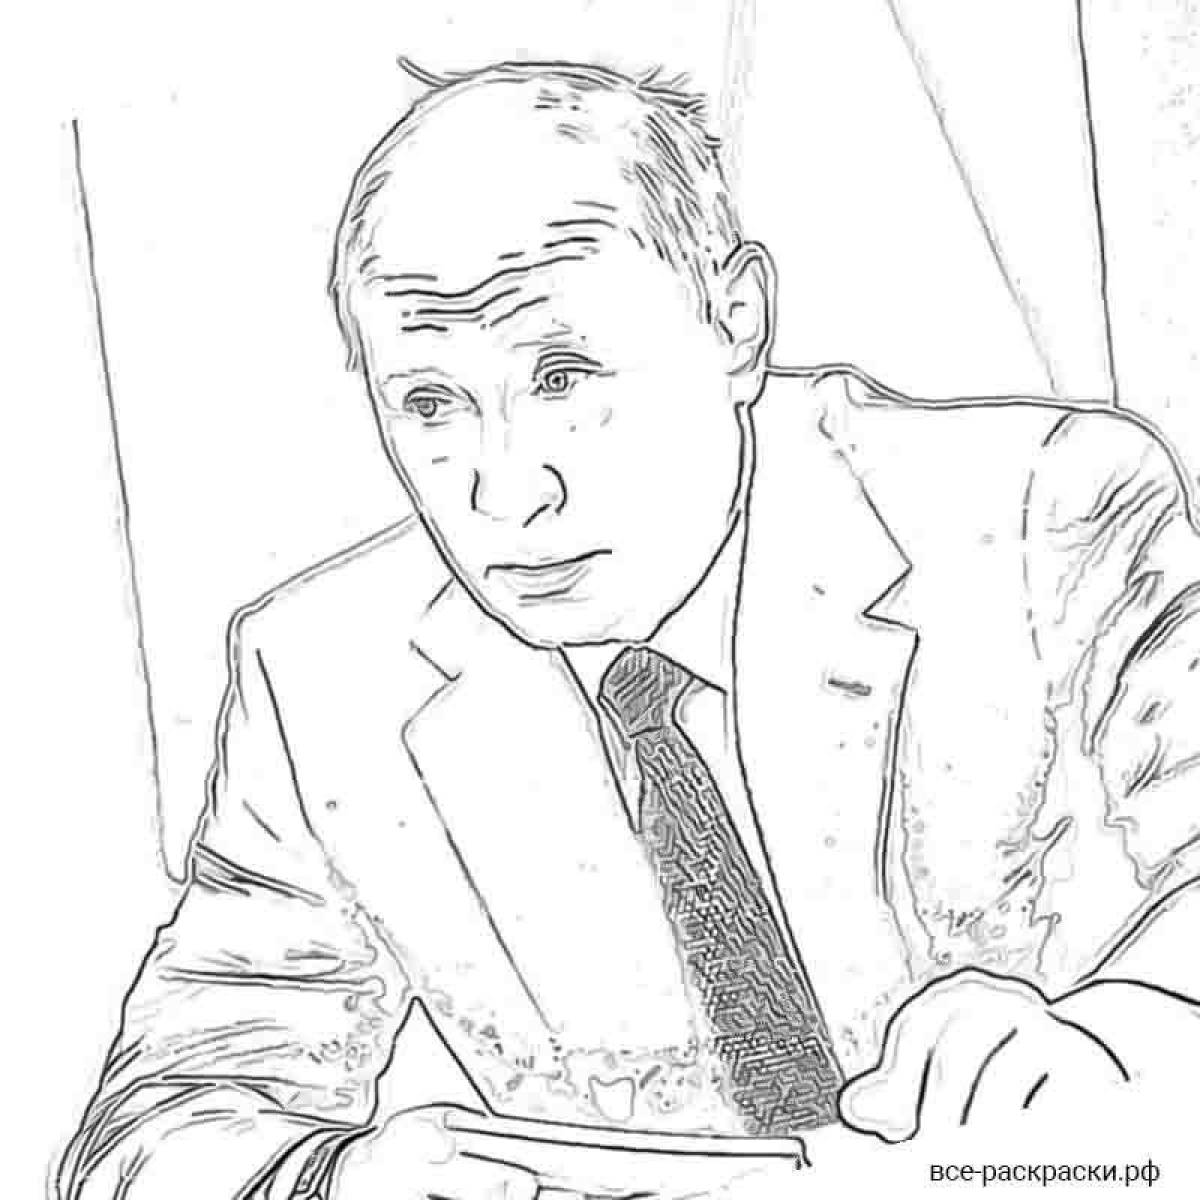 Putin's fun coloring book